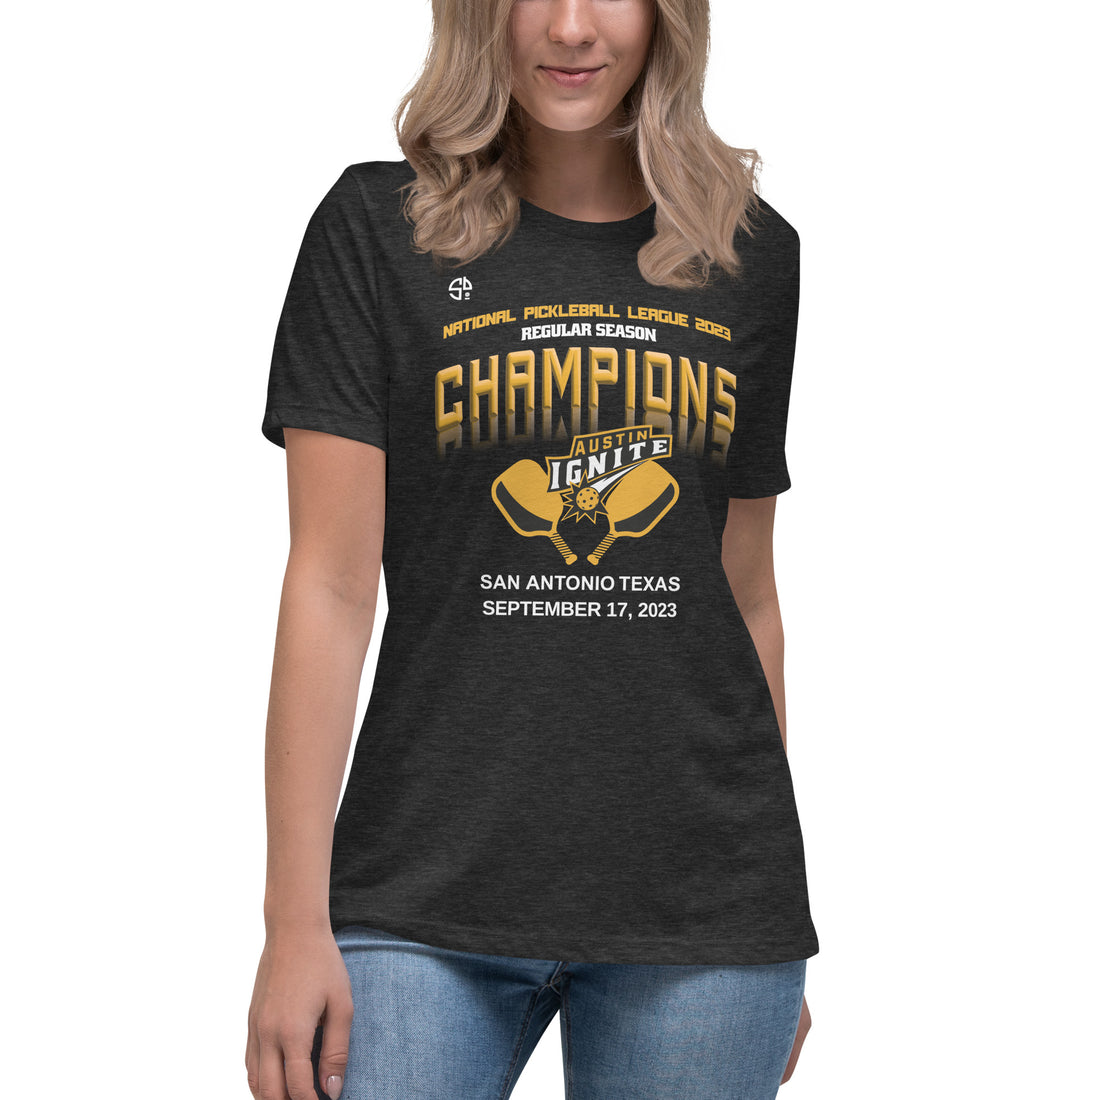 Austin Ignite™ NPL™ Regular Season Pickleball Championship Fan Shirt for Women